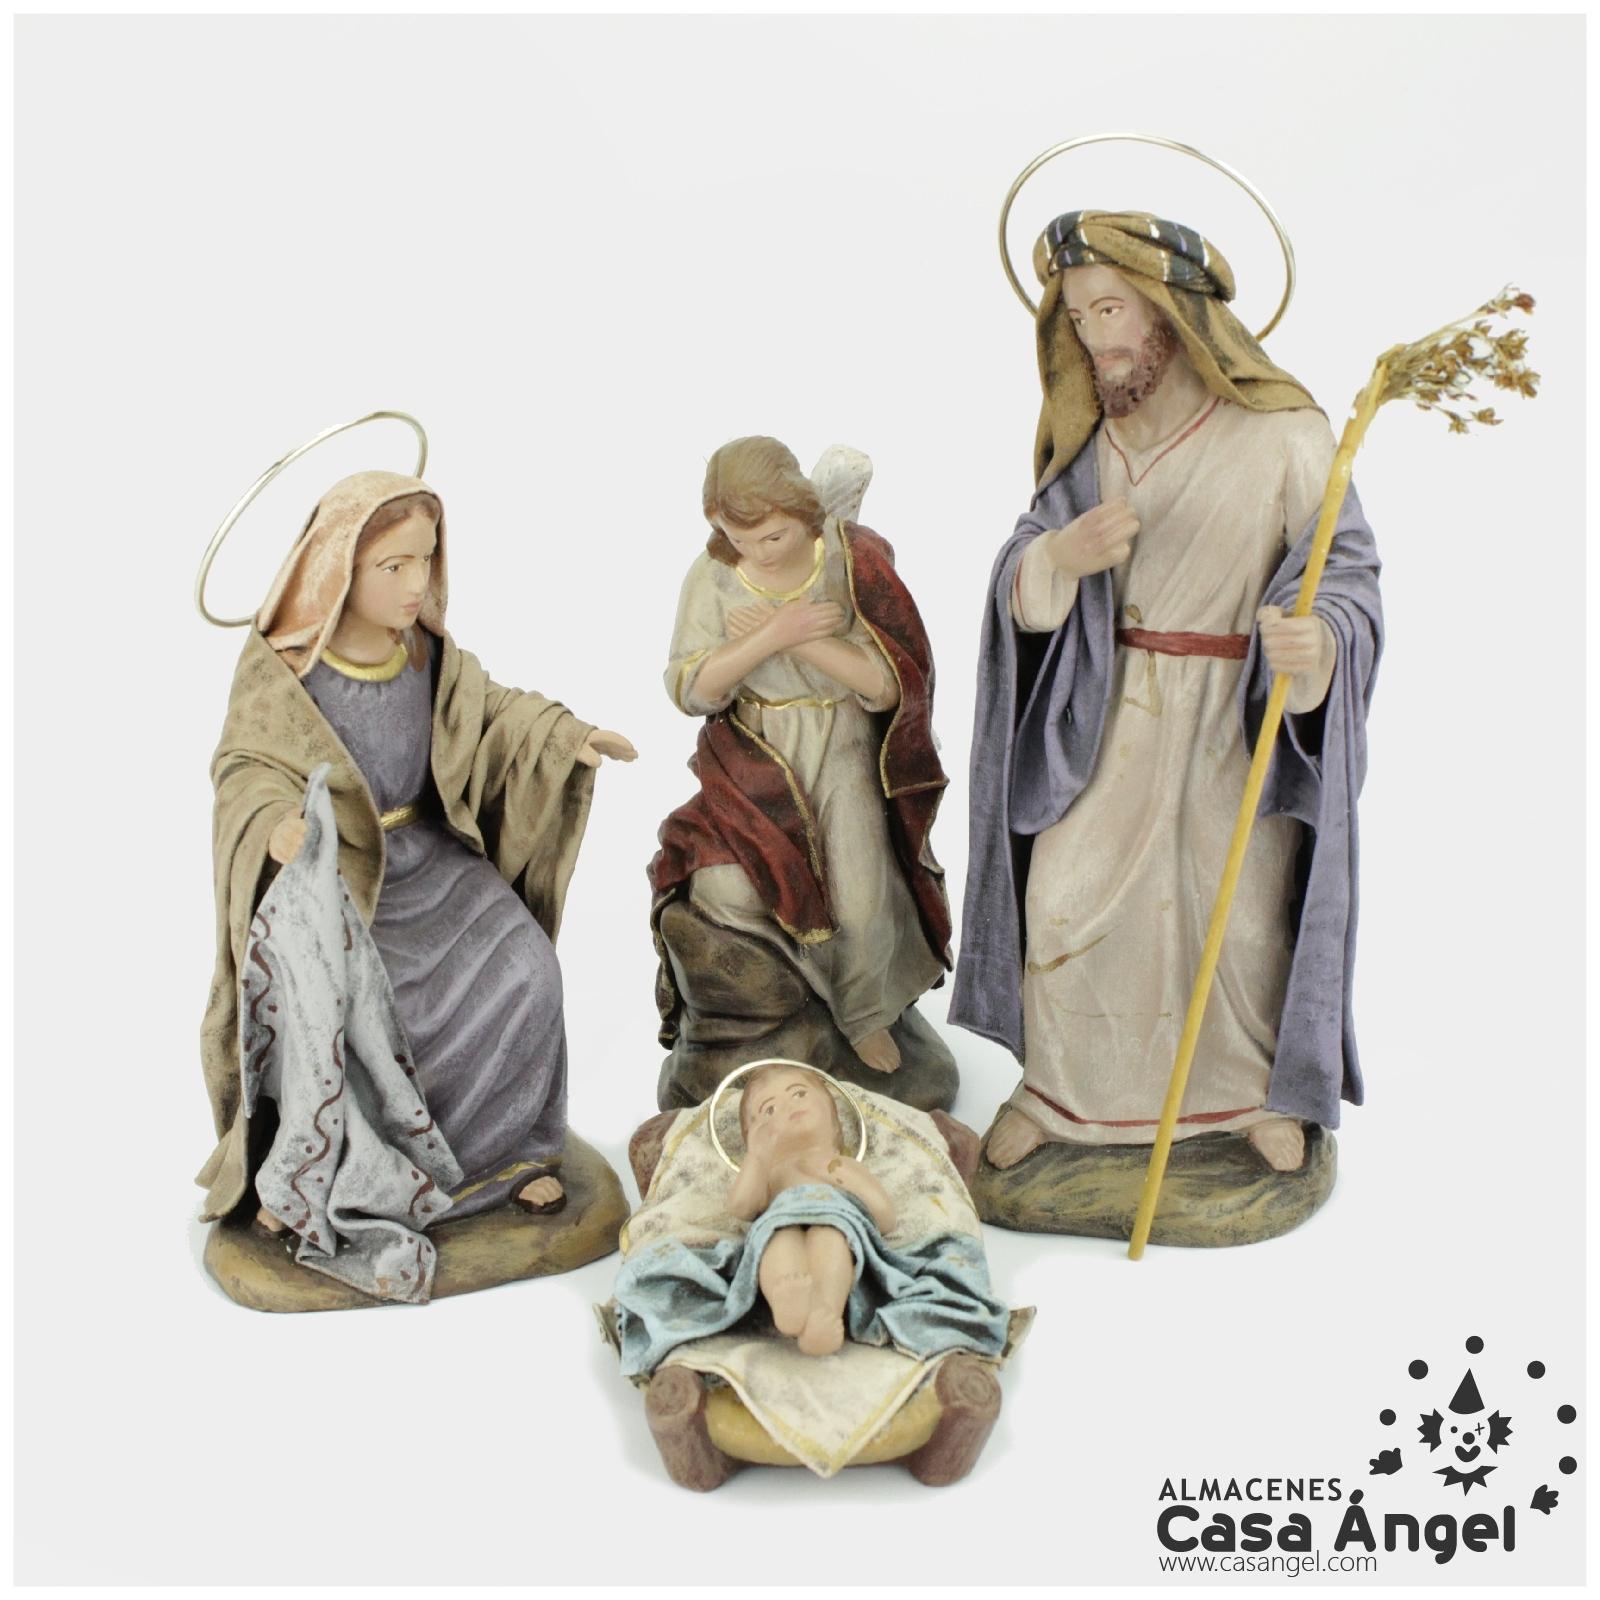 ALMACENES CASA ANGEL Portal DE BELÉN DE Corcho con Figuras Ideal para DECORACIÓN DE Navidad. 